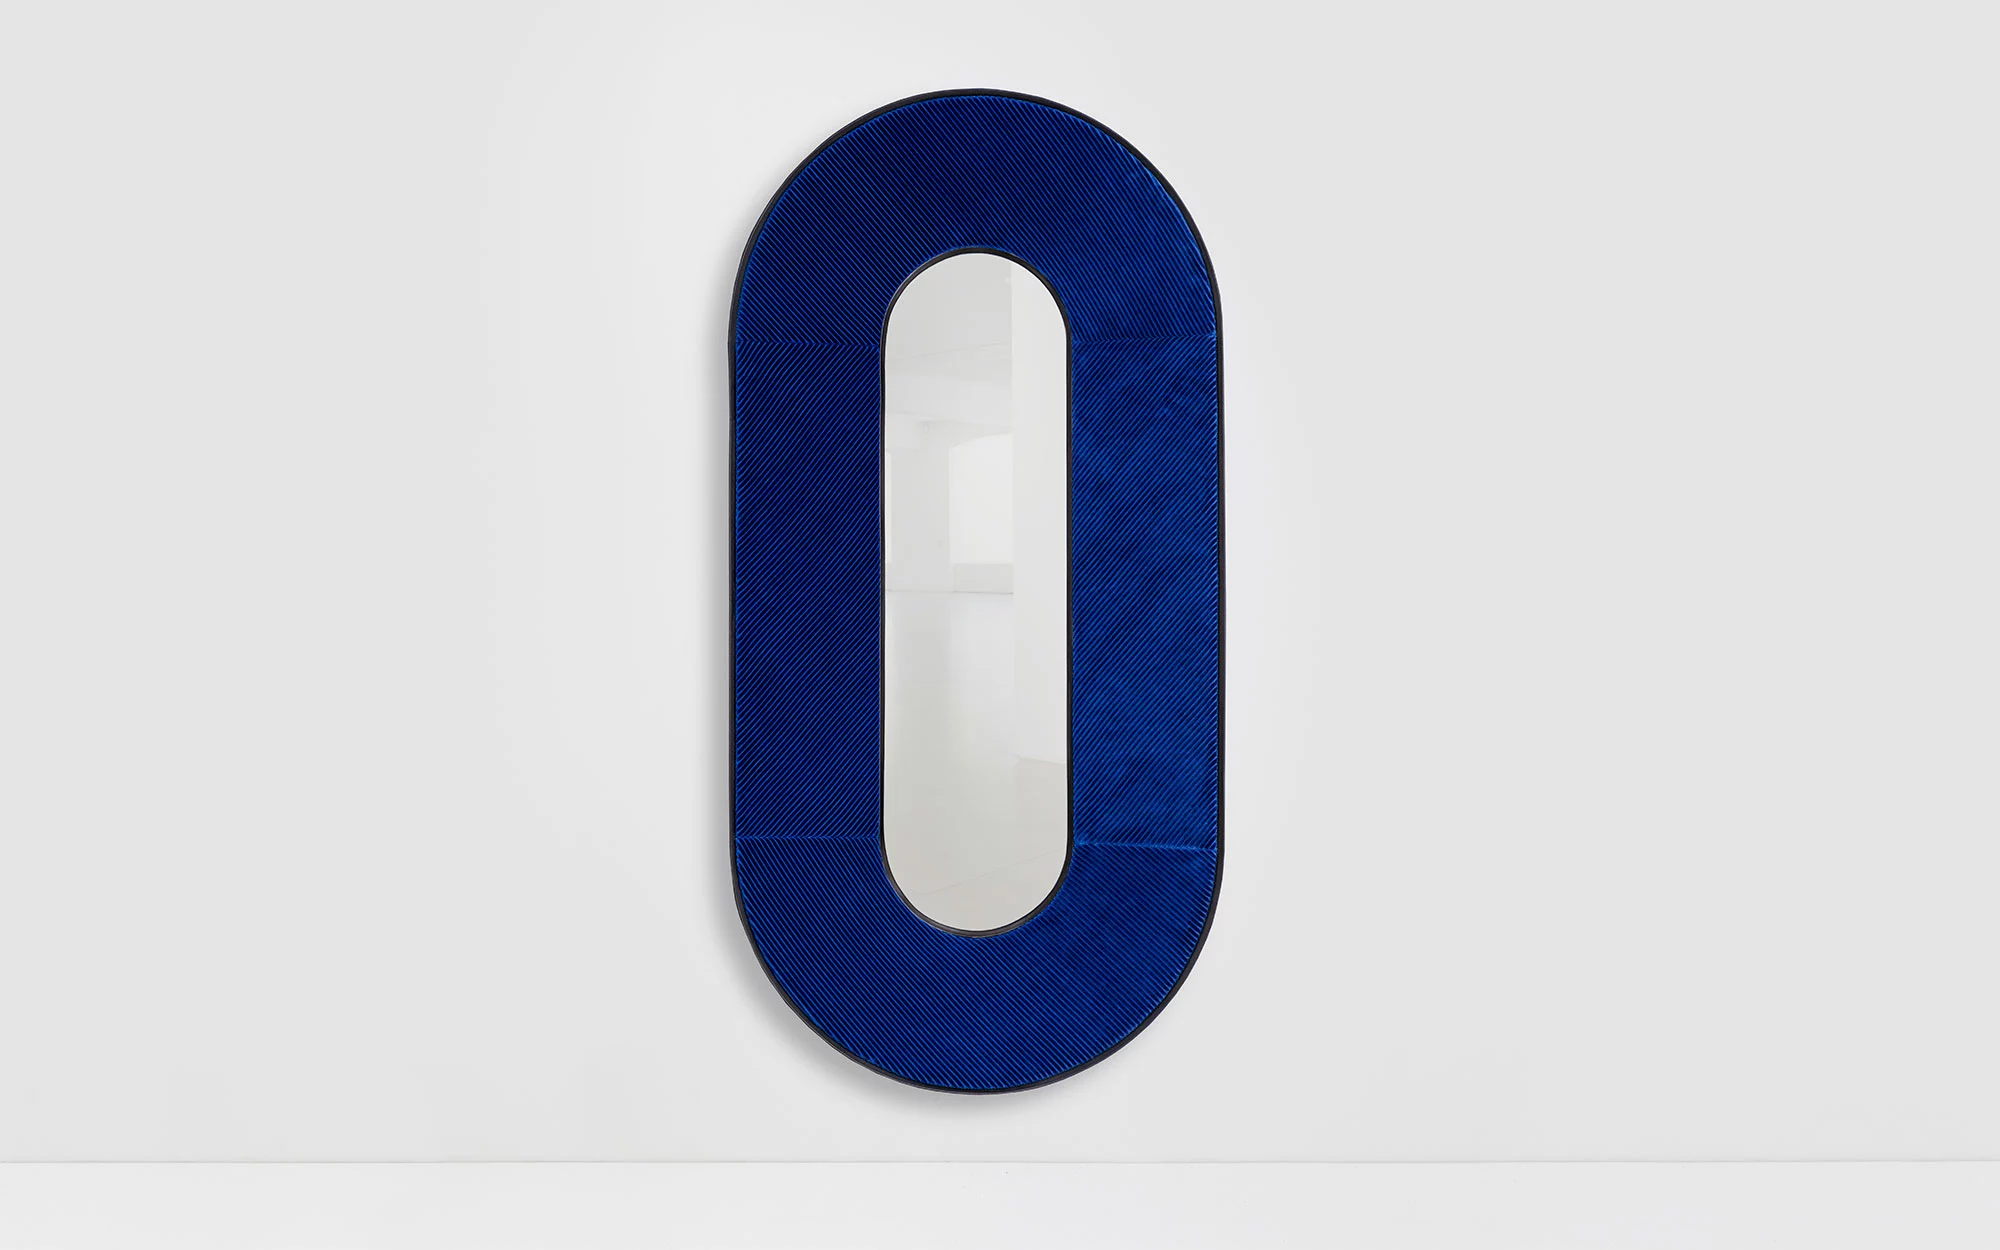 Apollo mirror - Jean-Baptiste Fastrez - Miscellaneous - Galerie kreo